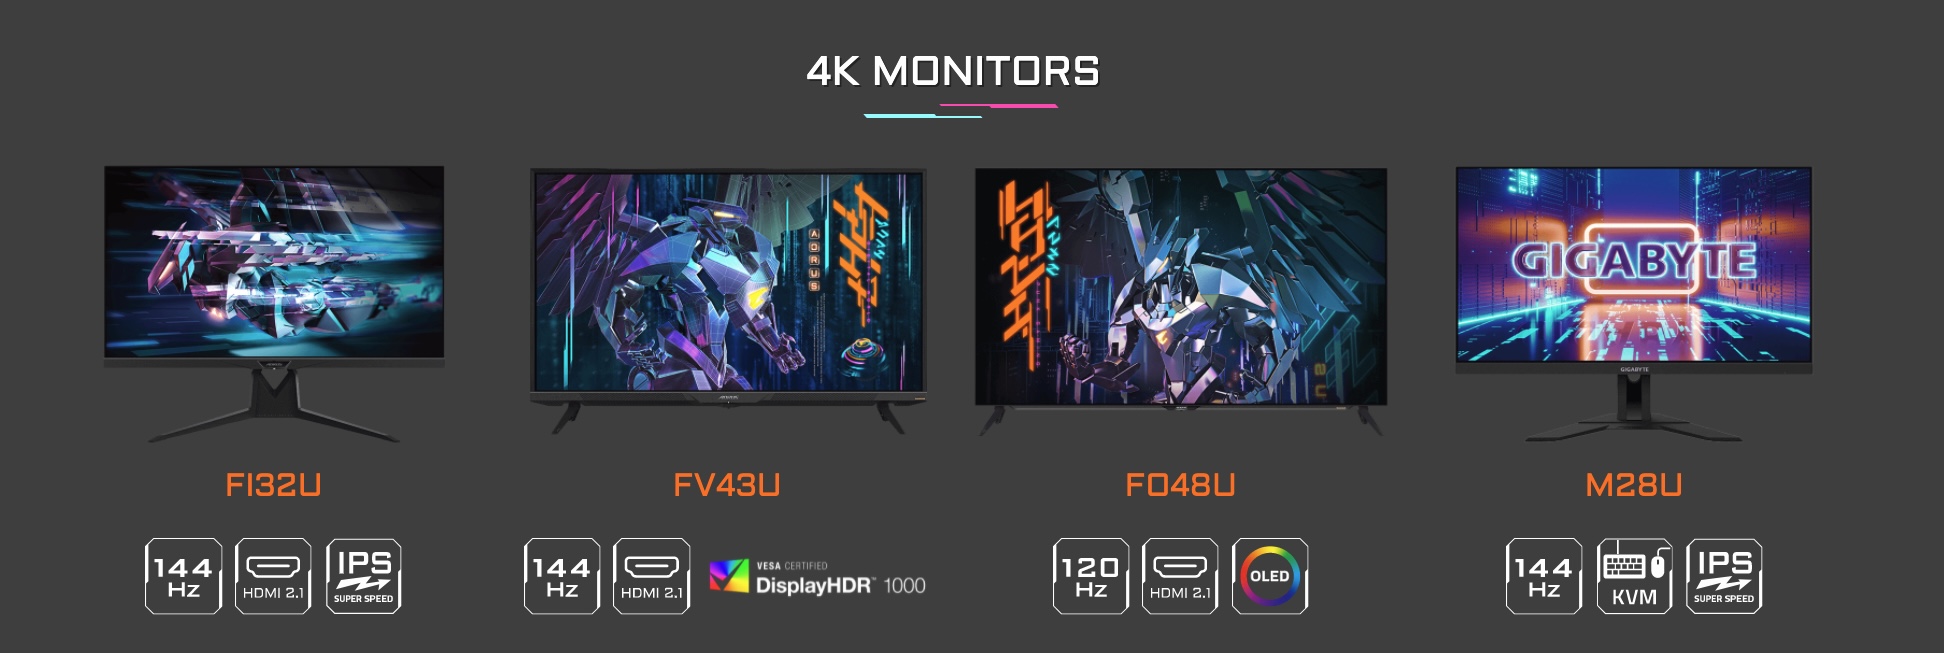 Tiếp nối thành công, GIGABYTE trình làng thêm 2 màn hình chơi game 4K hỗ trợ HDMI 2.1